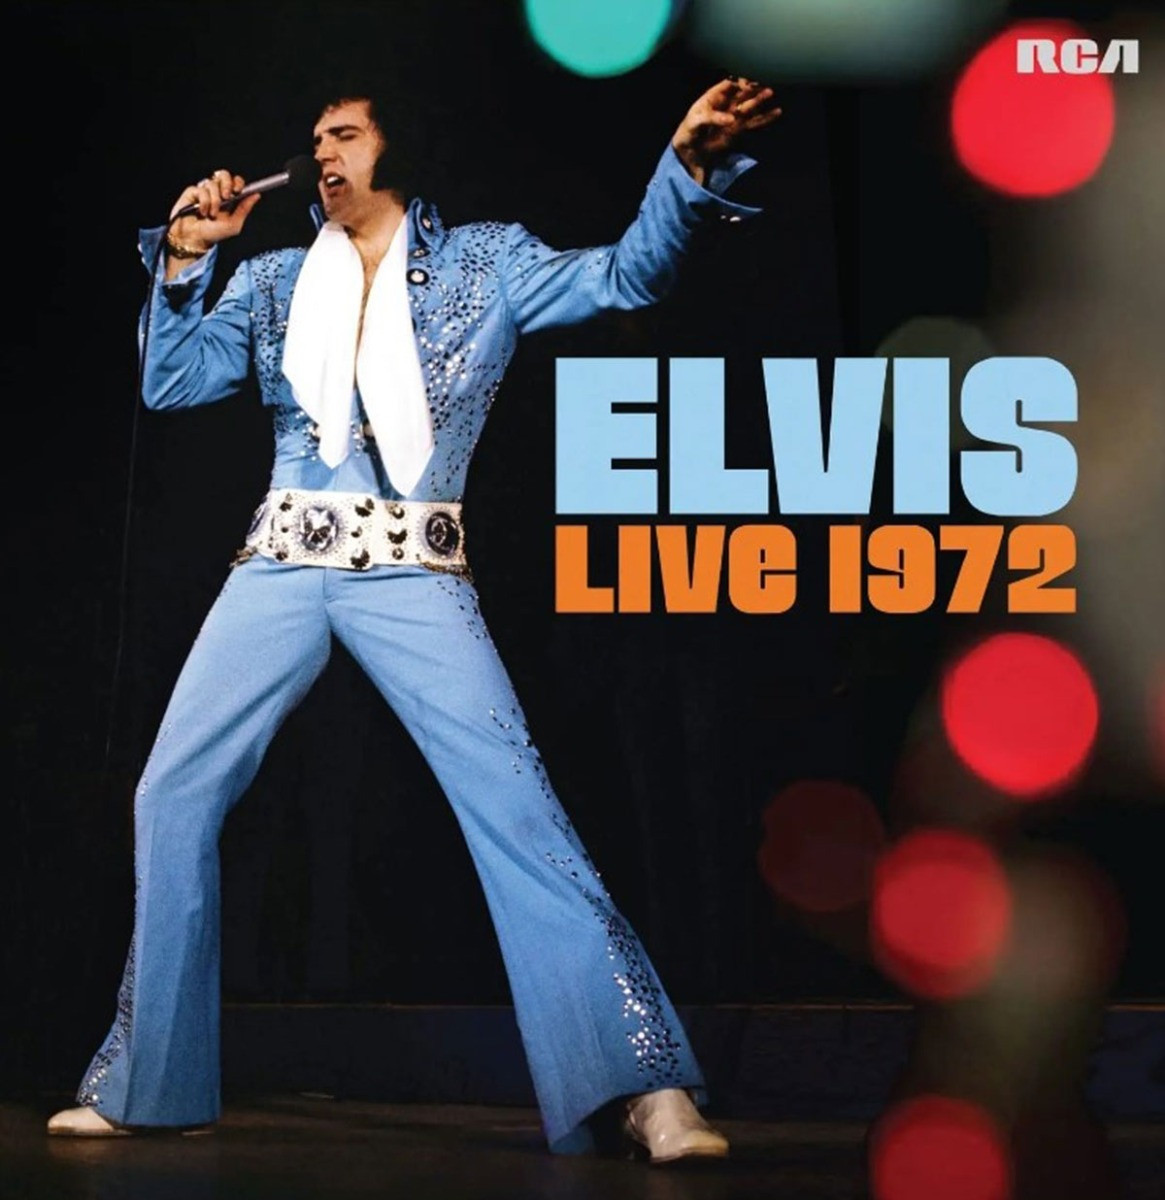 Elvis Presley - Elvis Live 1972 2LP